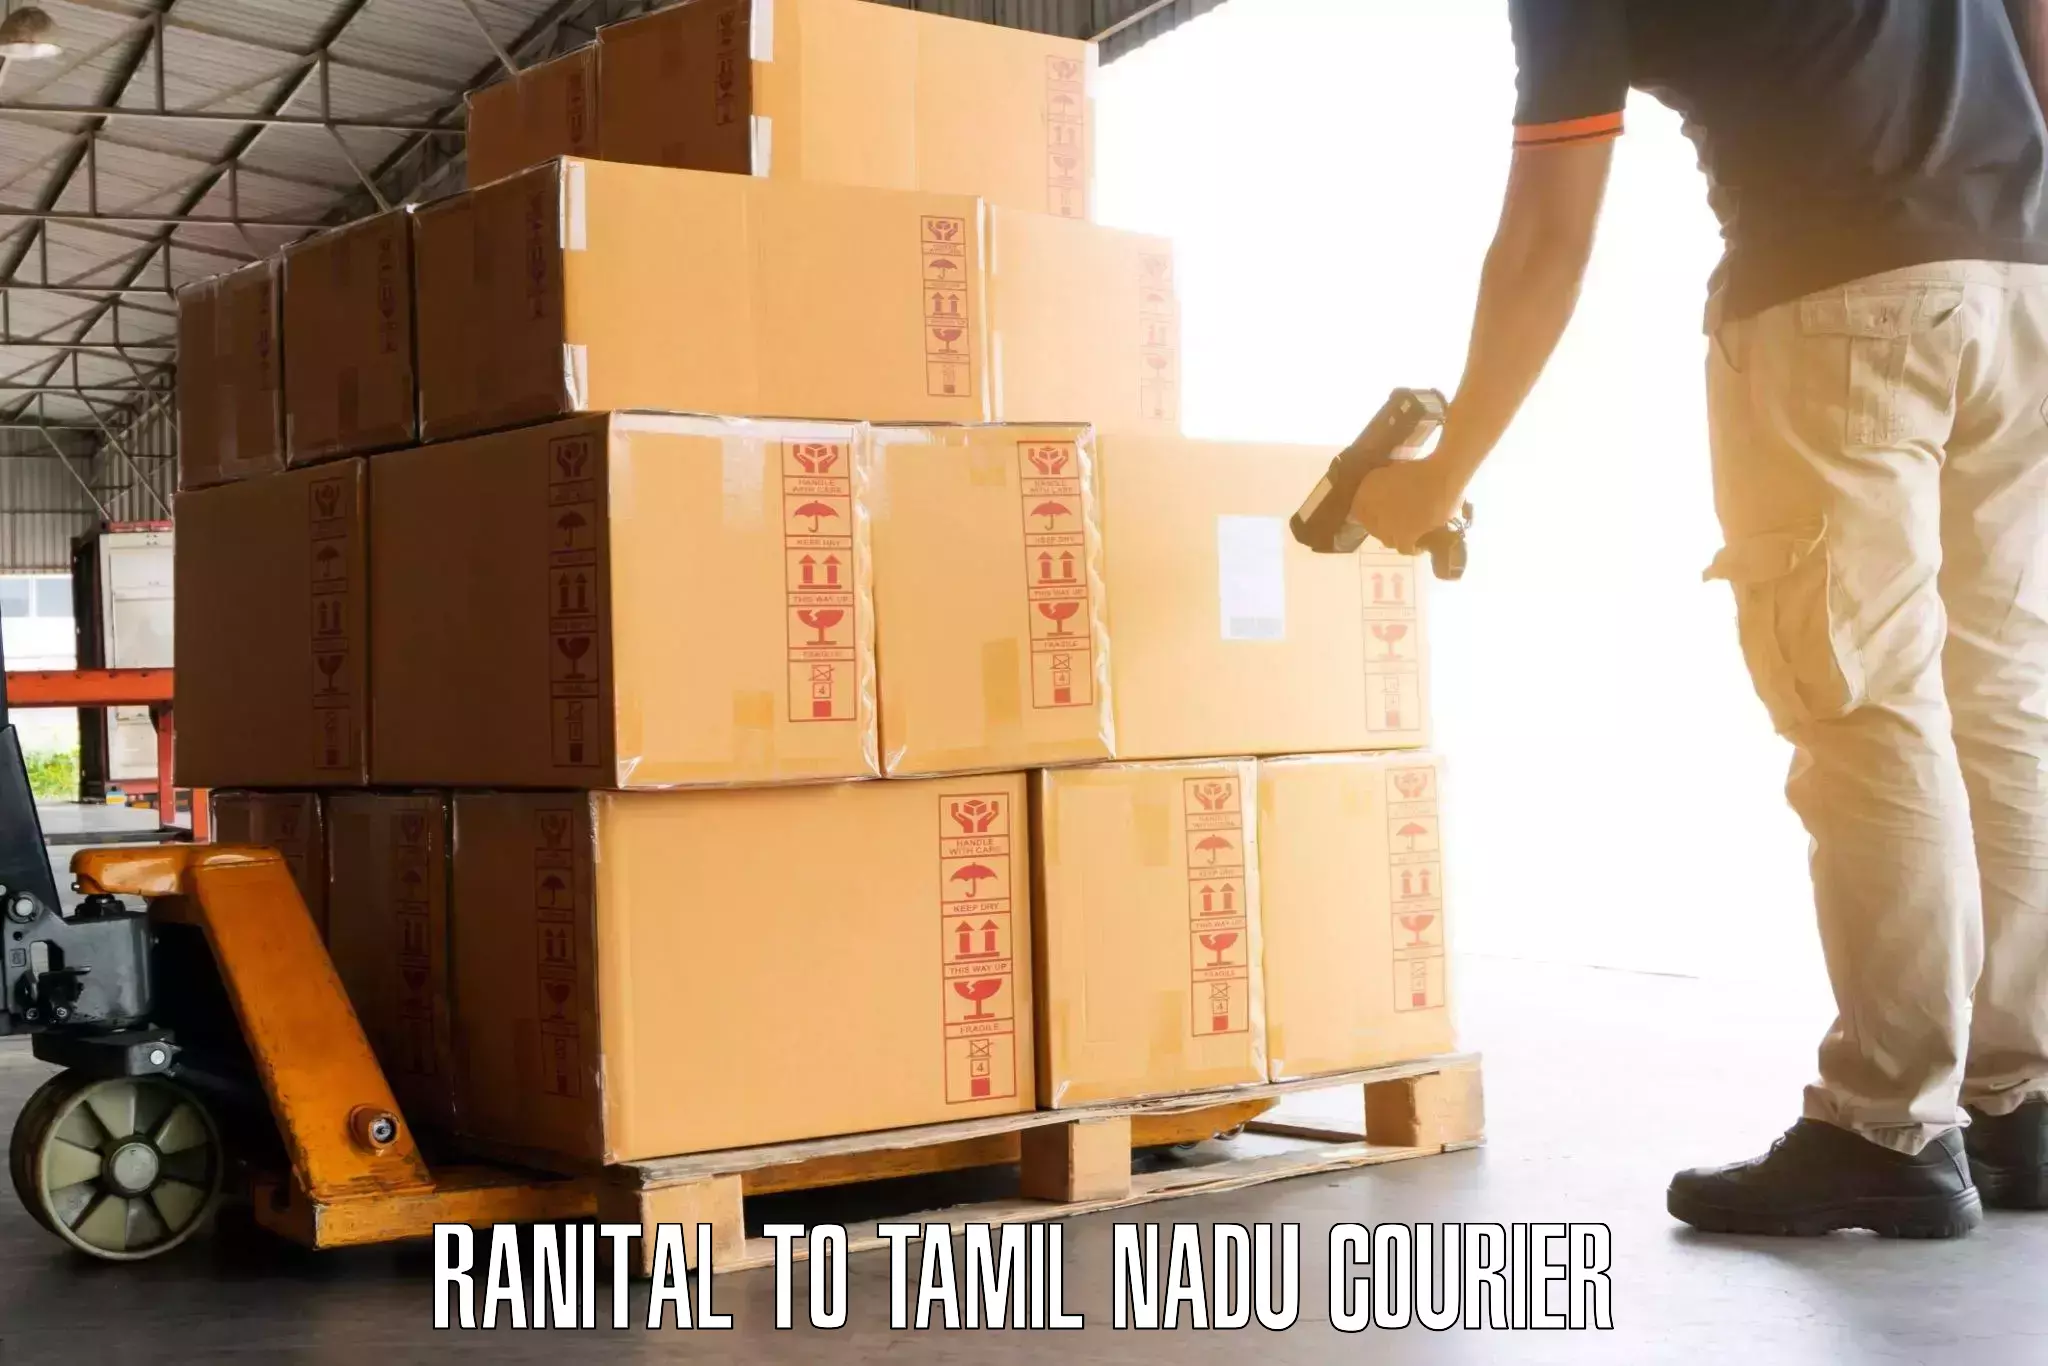 Luggage transport logistics Ranital to Tamil Nadu